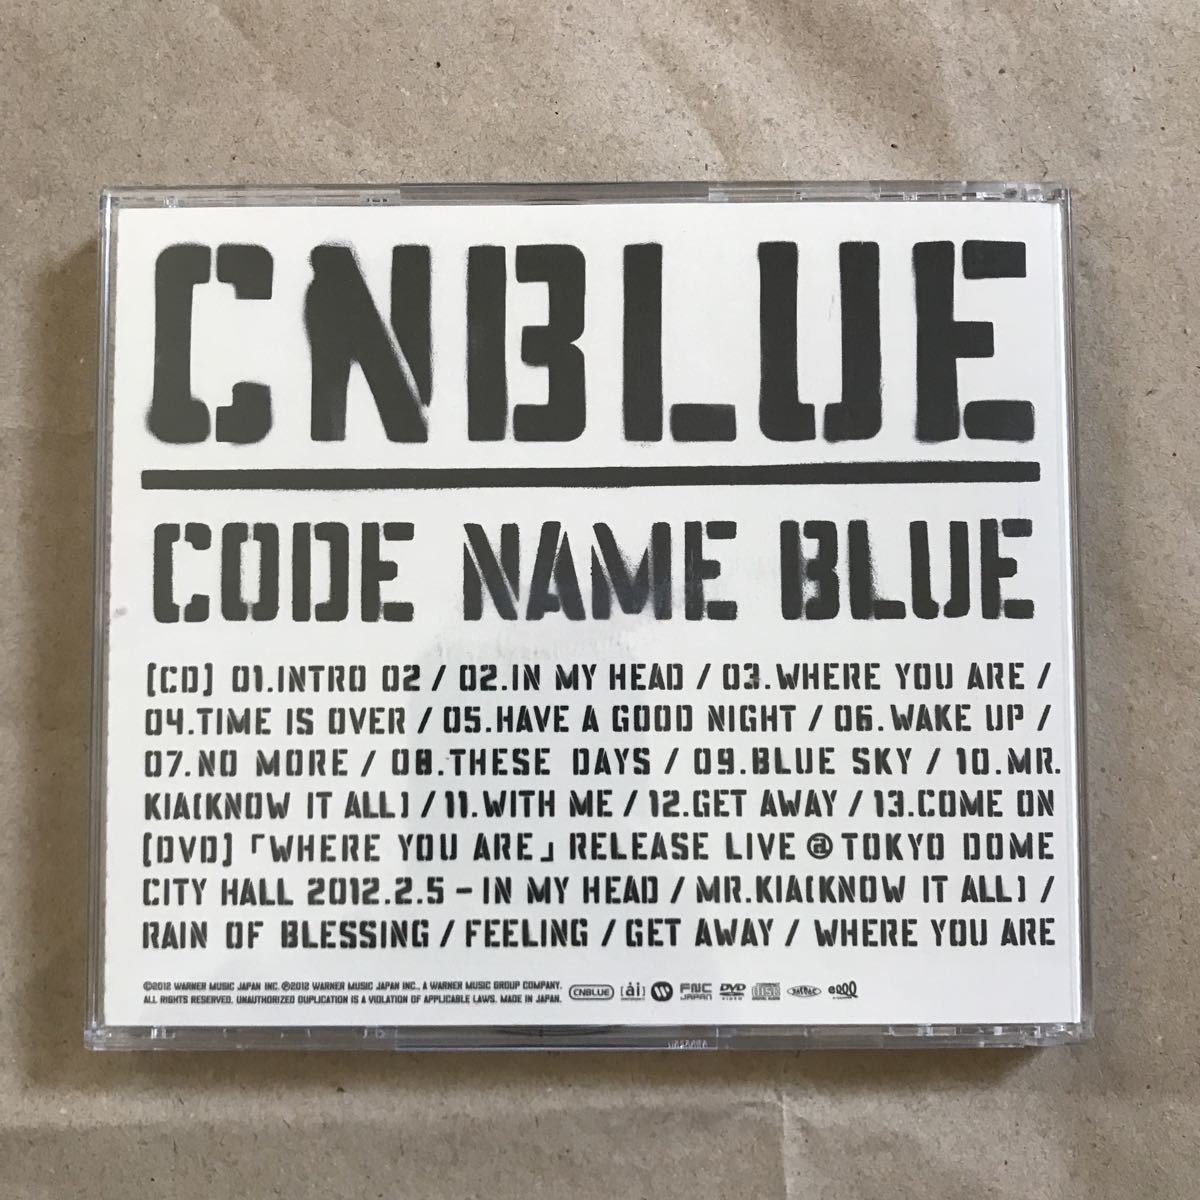 ヤフオク Cnblue Code Name Blue Cd Dvd 美男ですね イケ